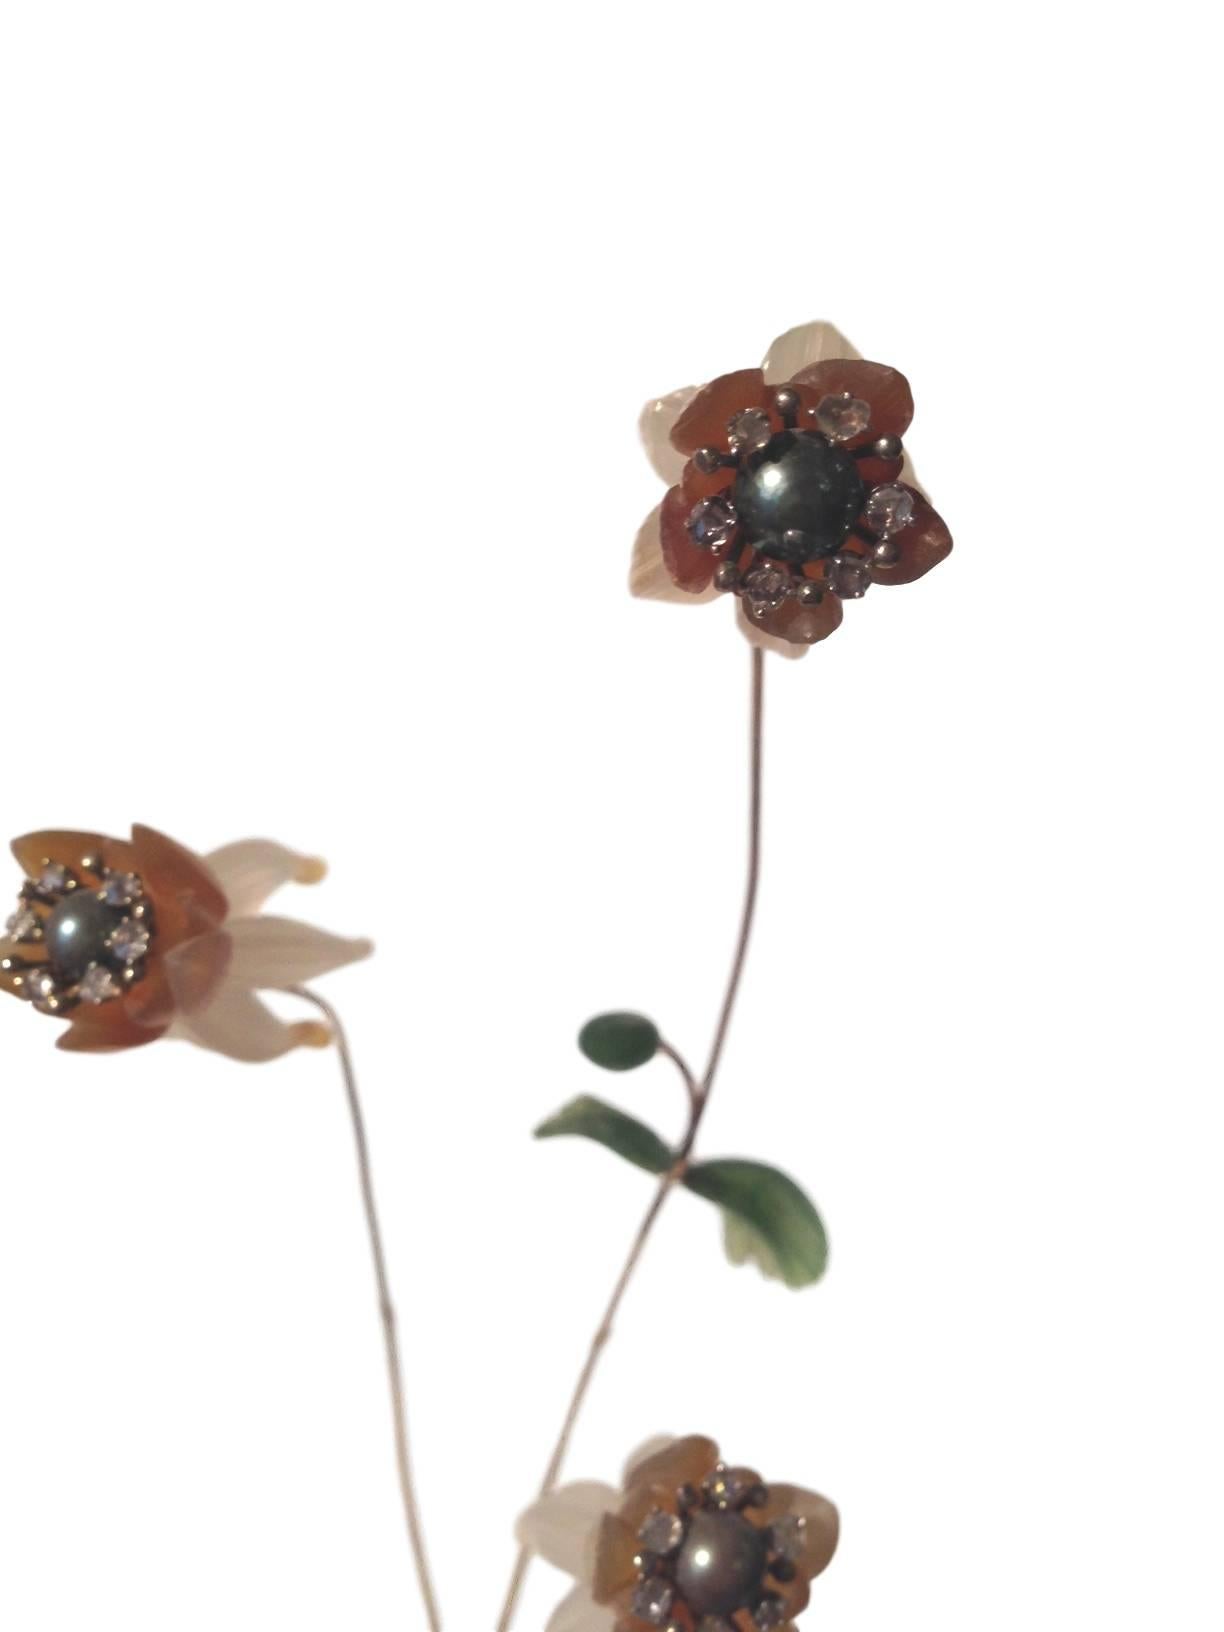 Une très spéciale et délicate étude de fleur russe en pierre dure et bijoux du 20e siècle. La base en cristal de roche émettant trois fleurs délicates façonnées à partir de quartz et de diamants taillés est attachée à une tige en bronze doré avec